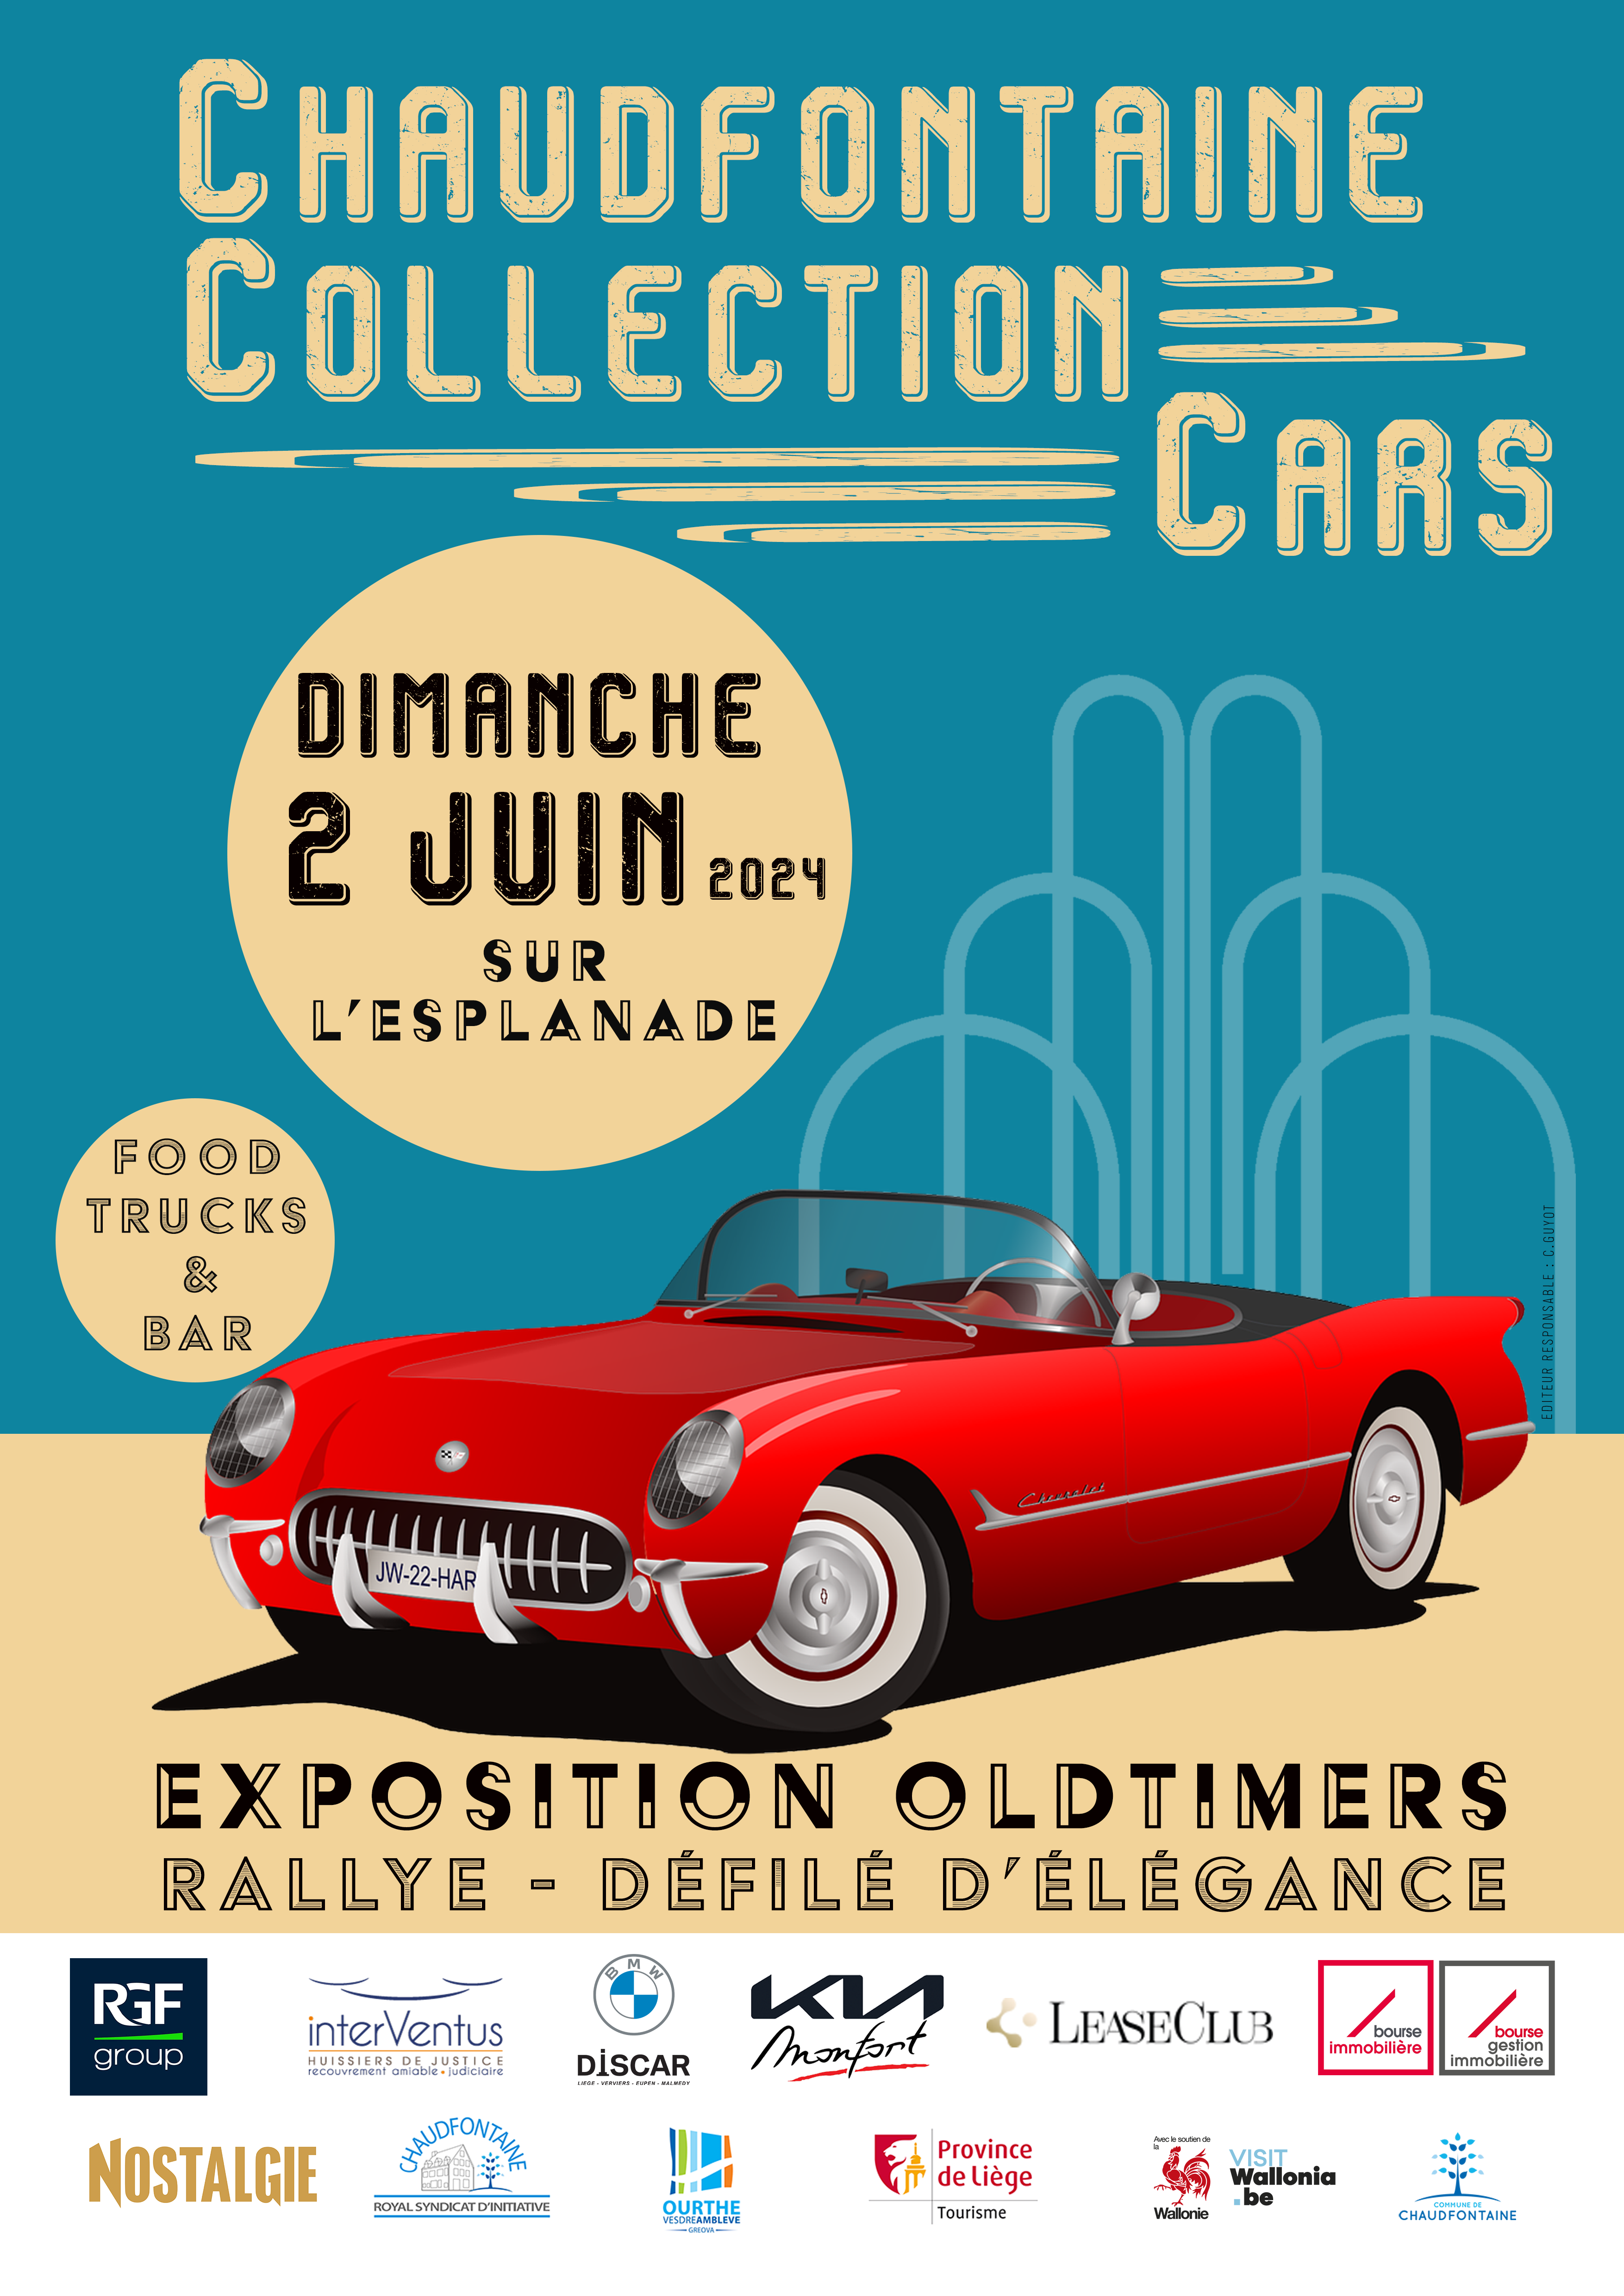 RENCONTRES | Chaudfontaine : rendez-vous des passionnés de voitures le 2 juin !